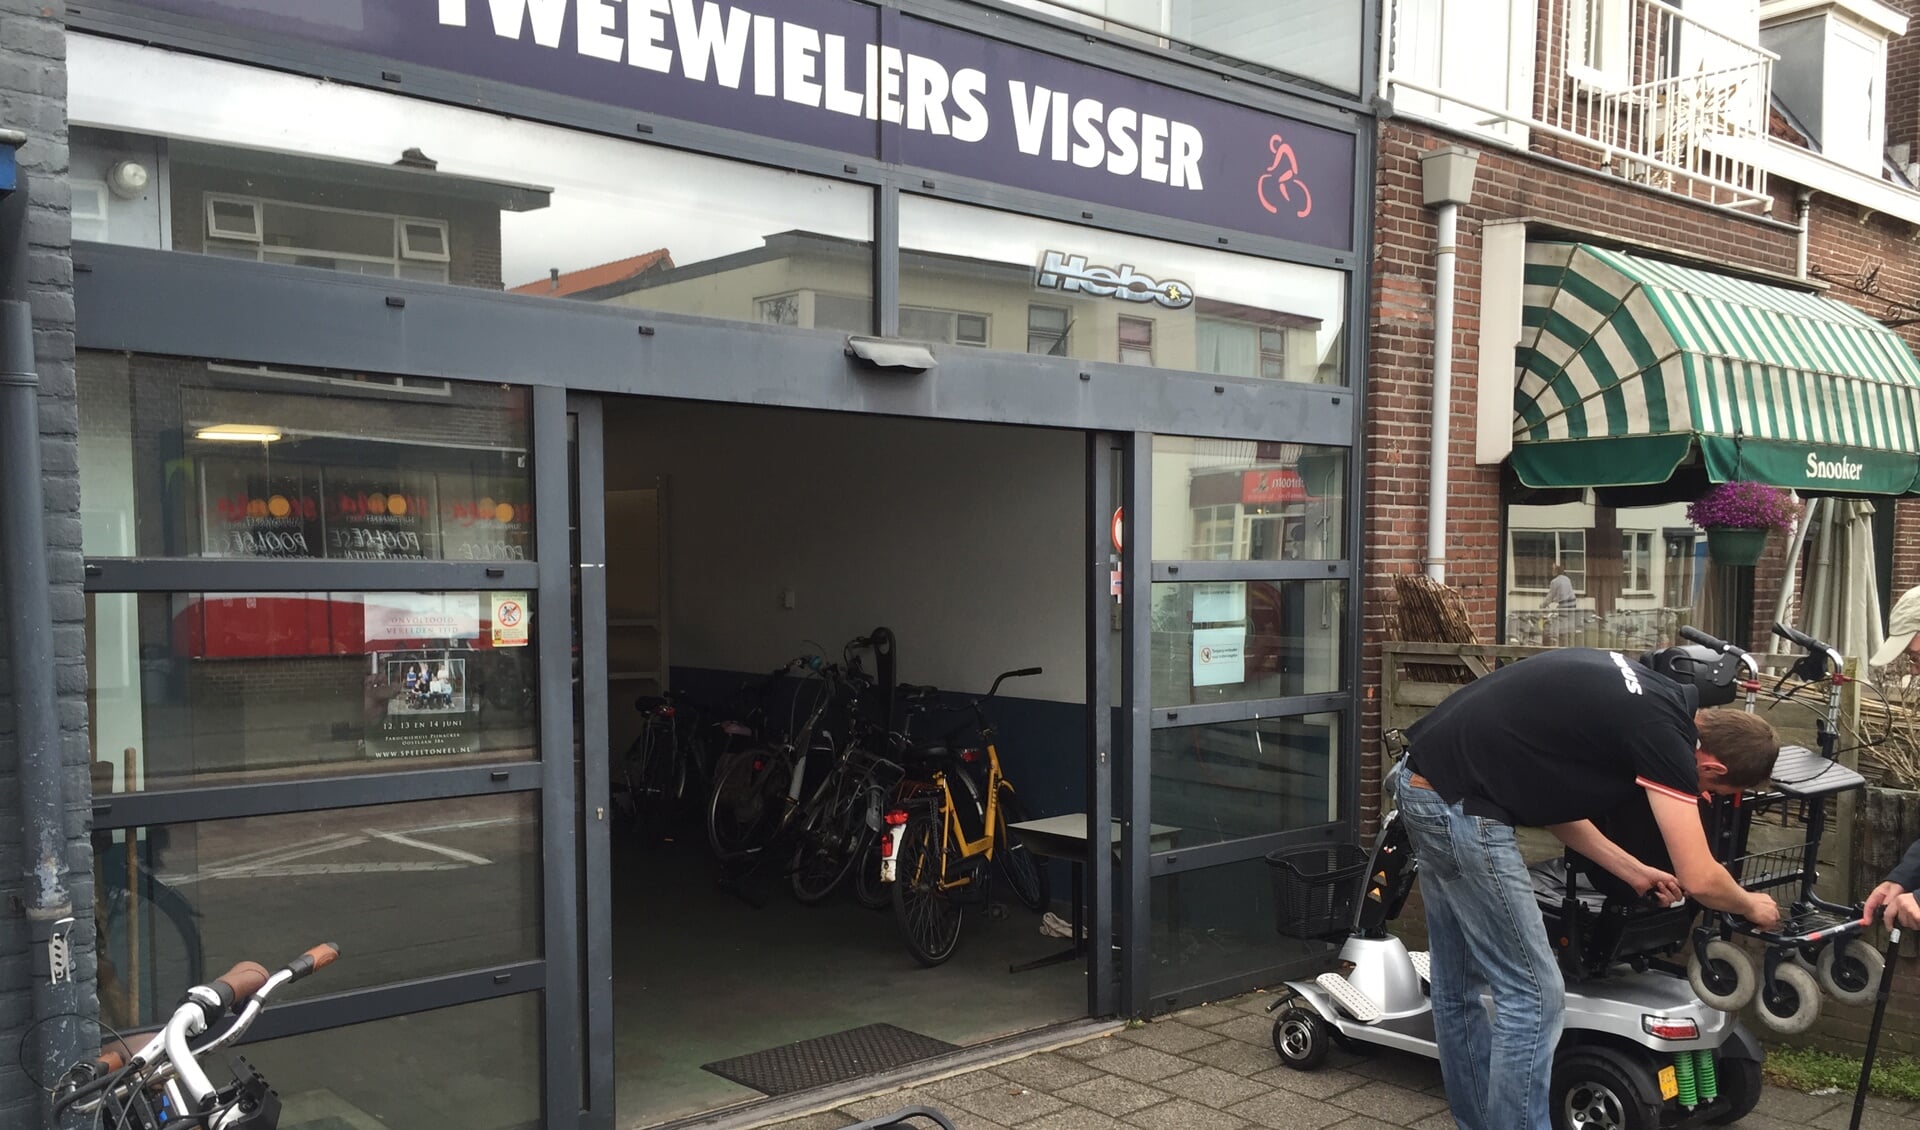 De bekende fietsenzaak was gisteren heel even open. Foto: Martijn Mastenbroek